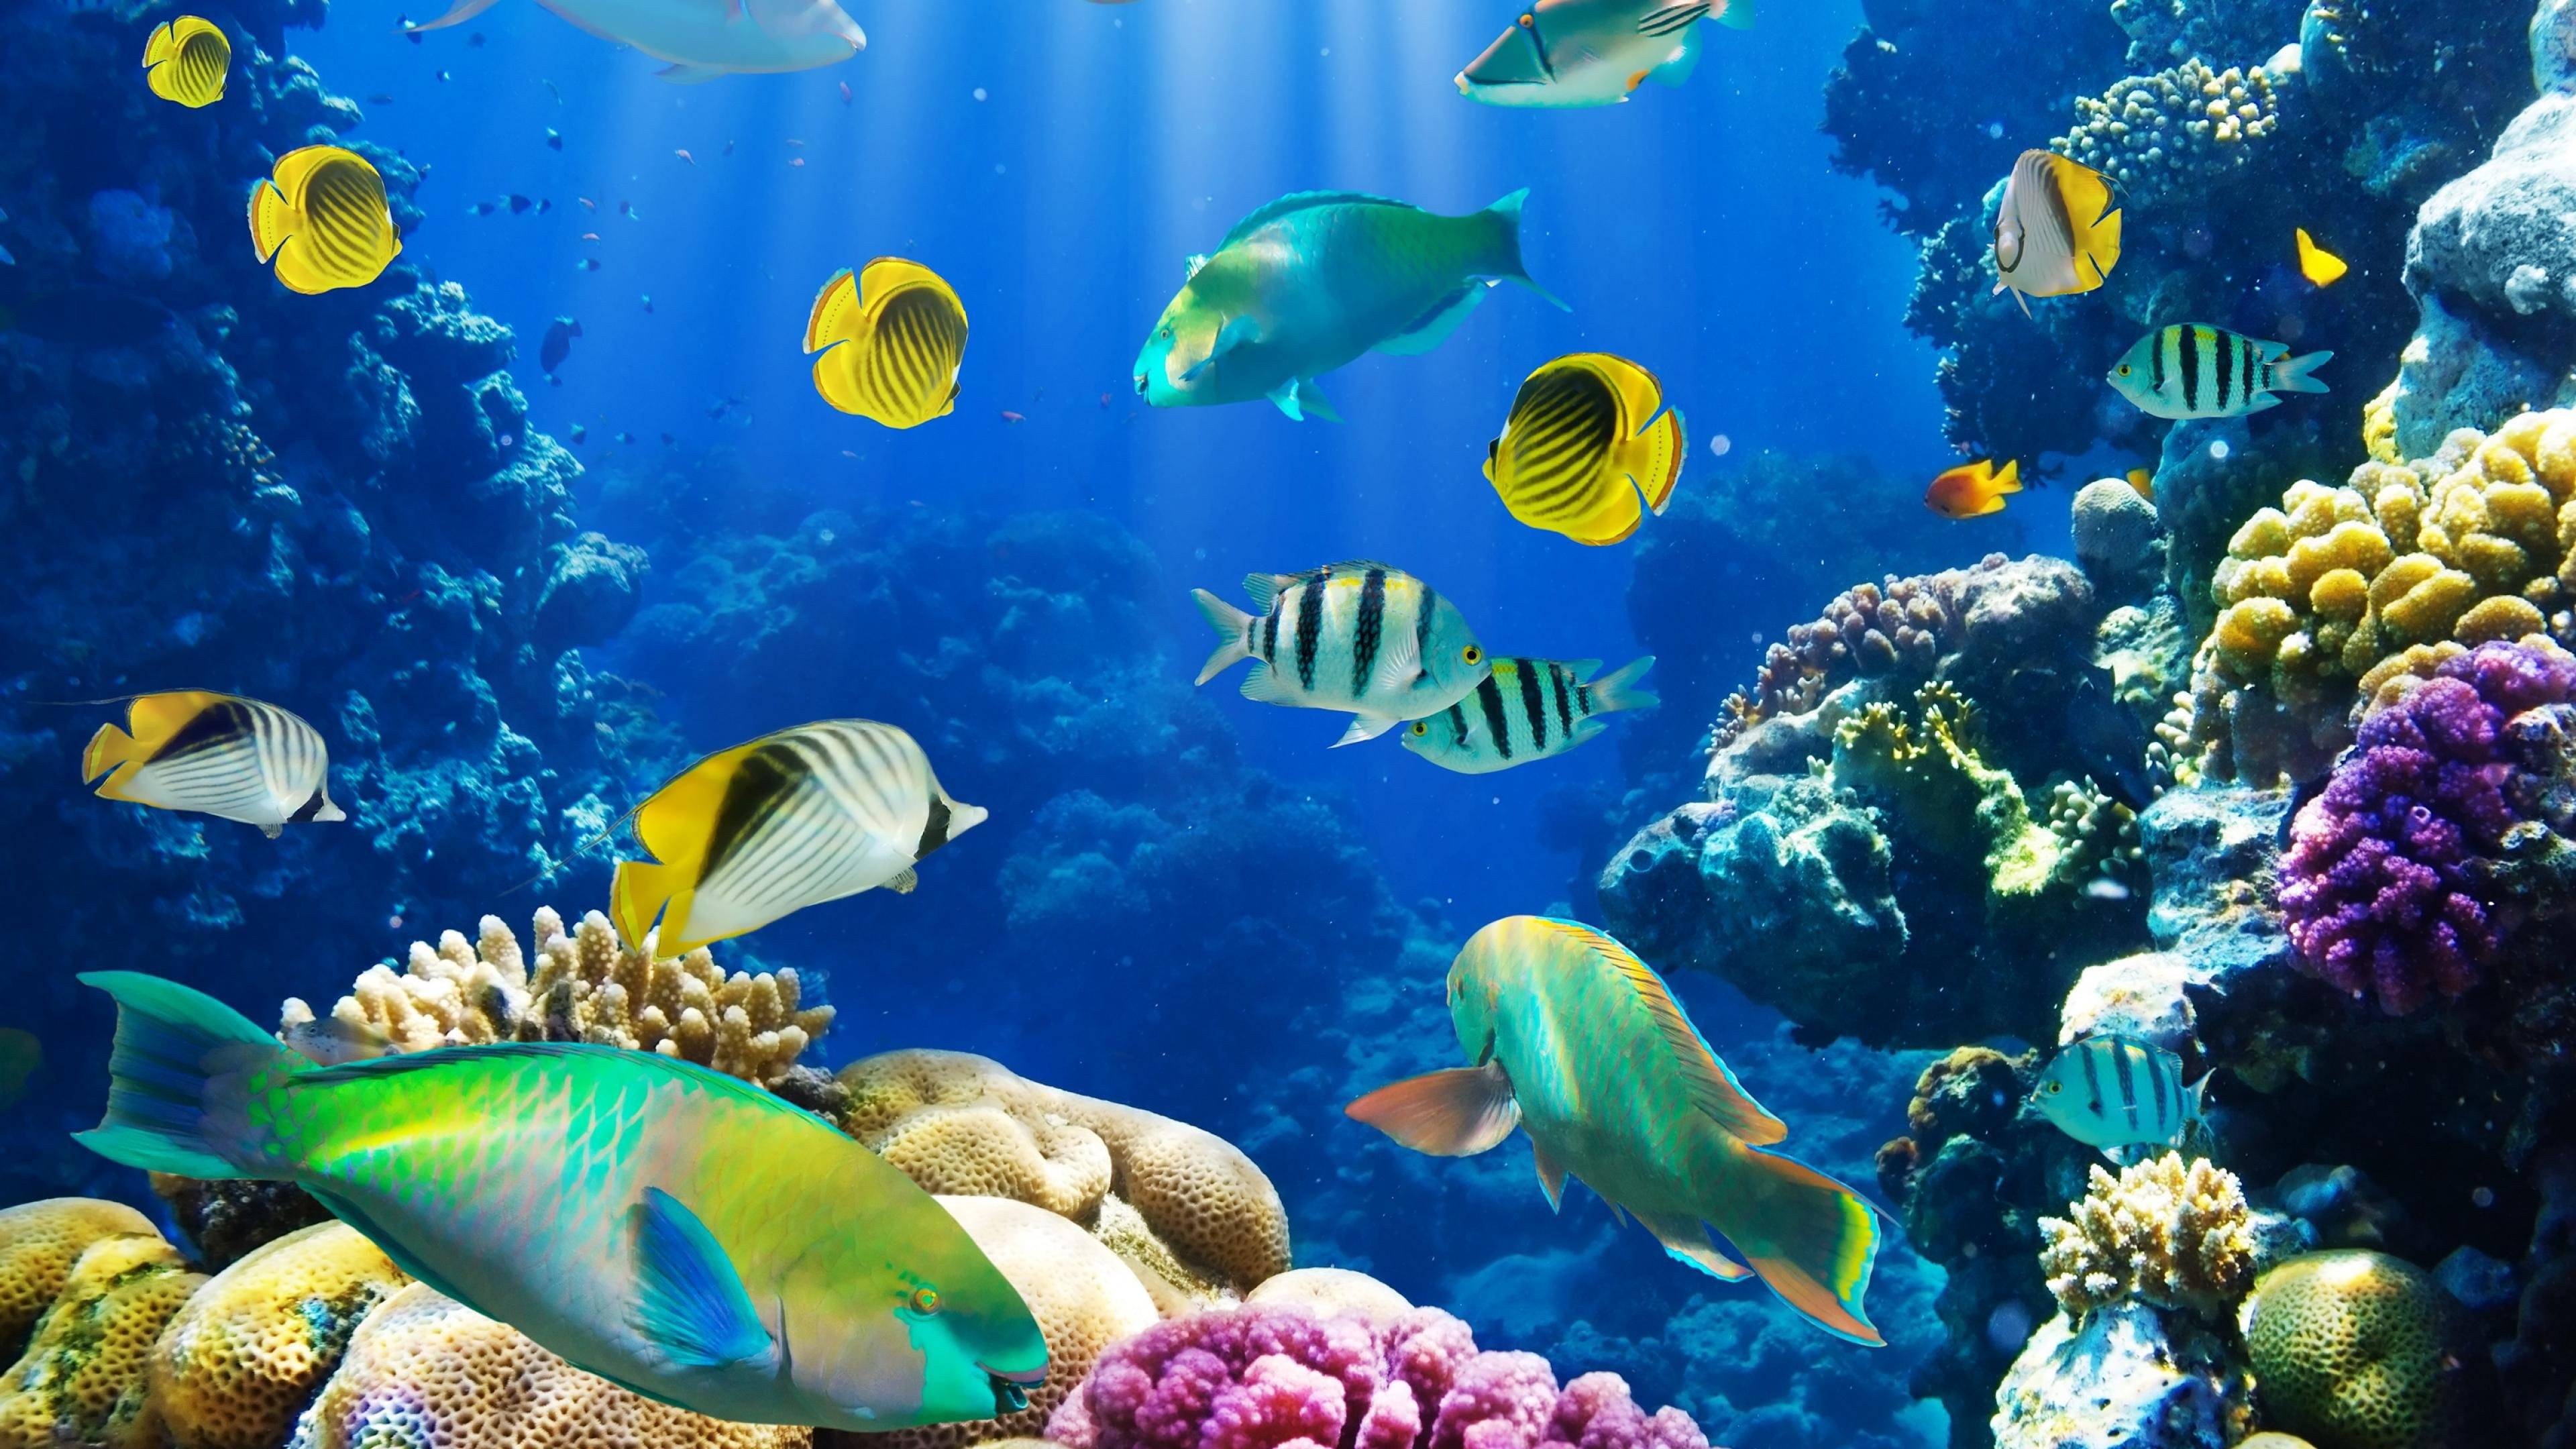 3840x2160 tags: aquarium fish live wallpaper for desktop, fish aquarium live wallpaper  download for windows 7, fish aquarium live wallpaper for windows 7, ...